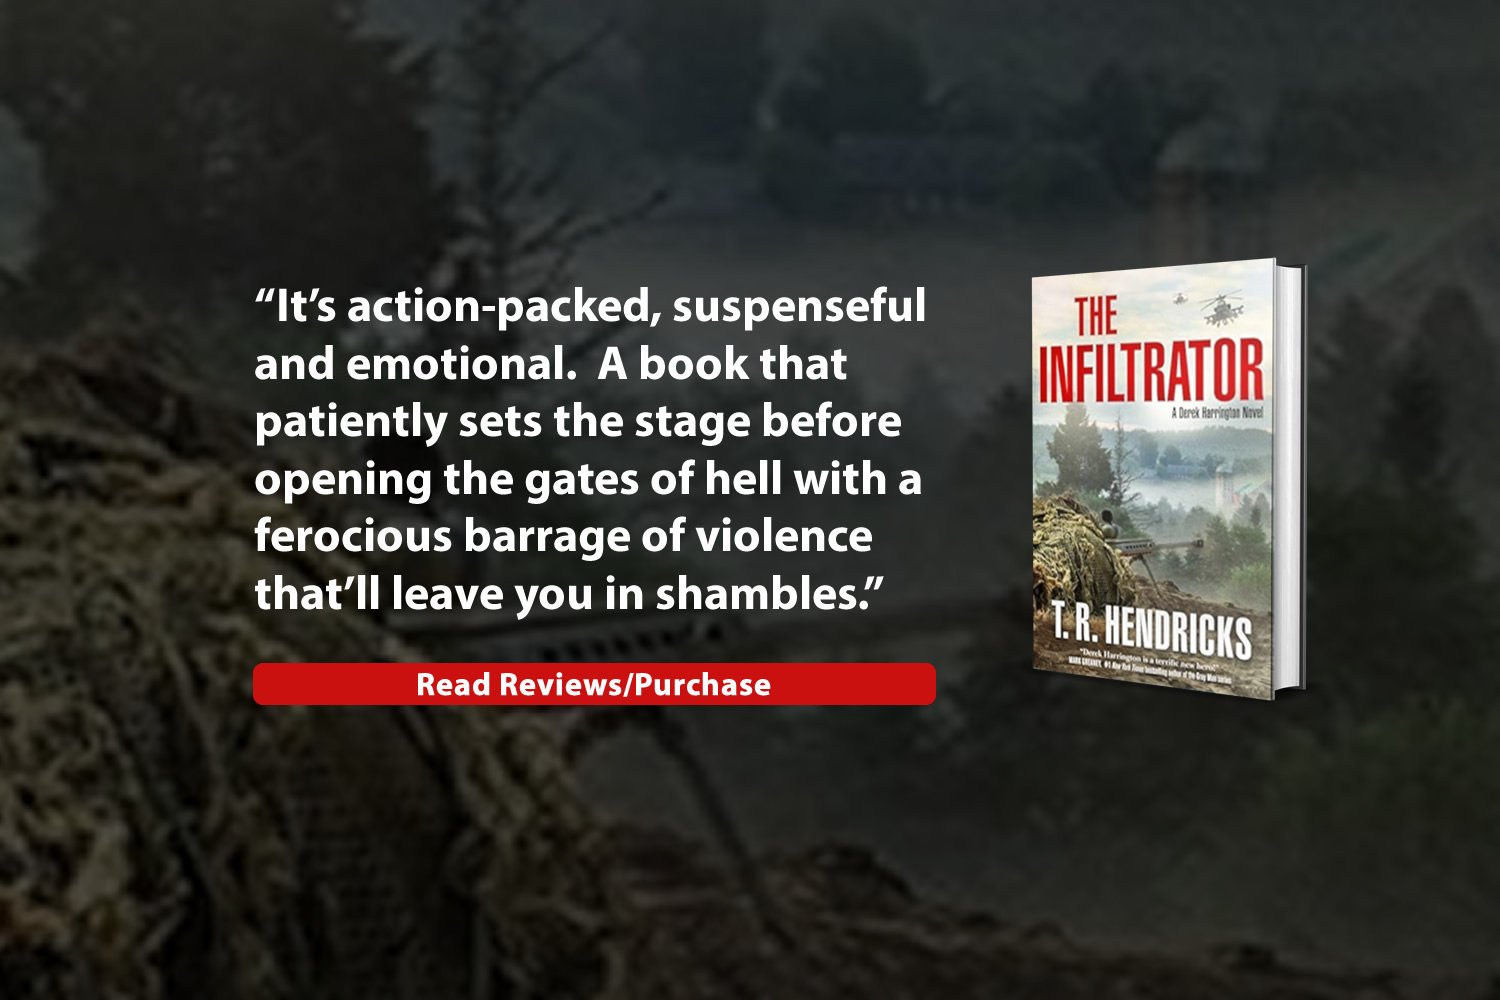 infiltrator-t-r-hendrics-best-thriller-books-steve-netter.jpg